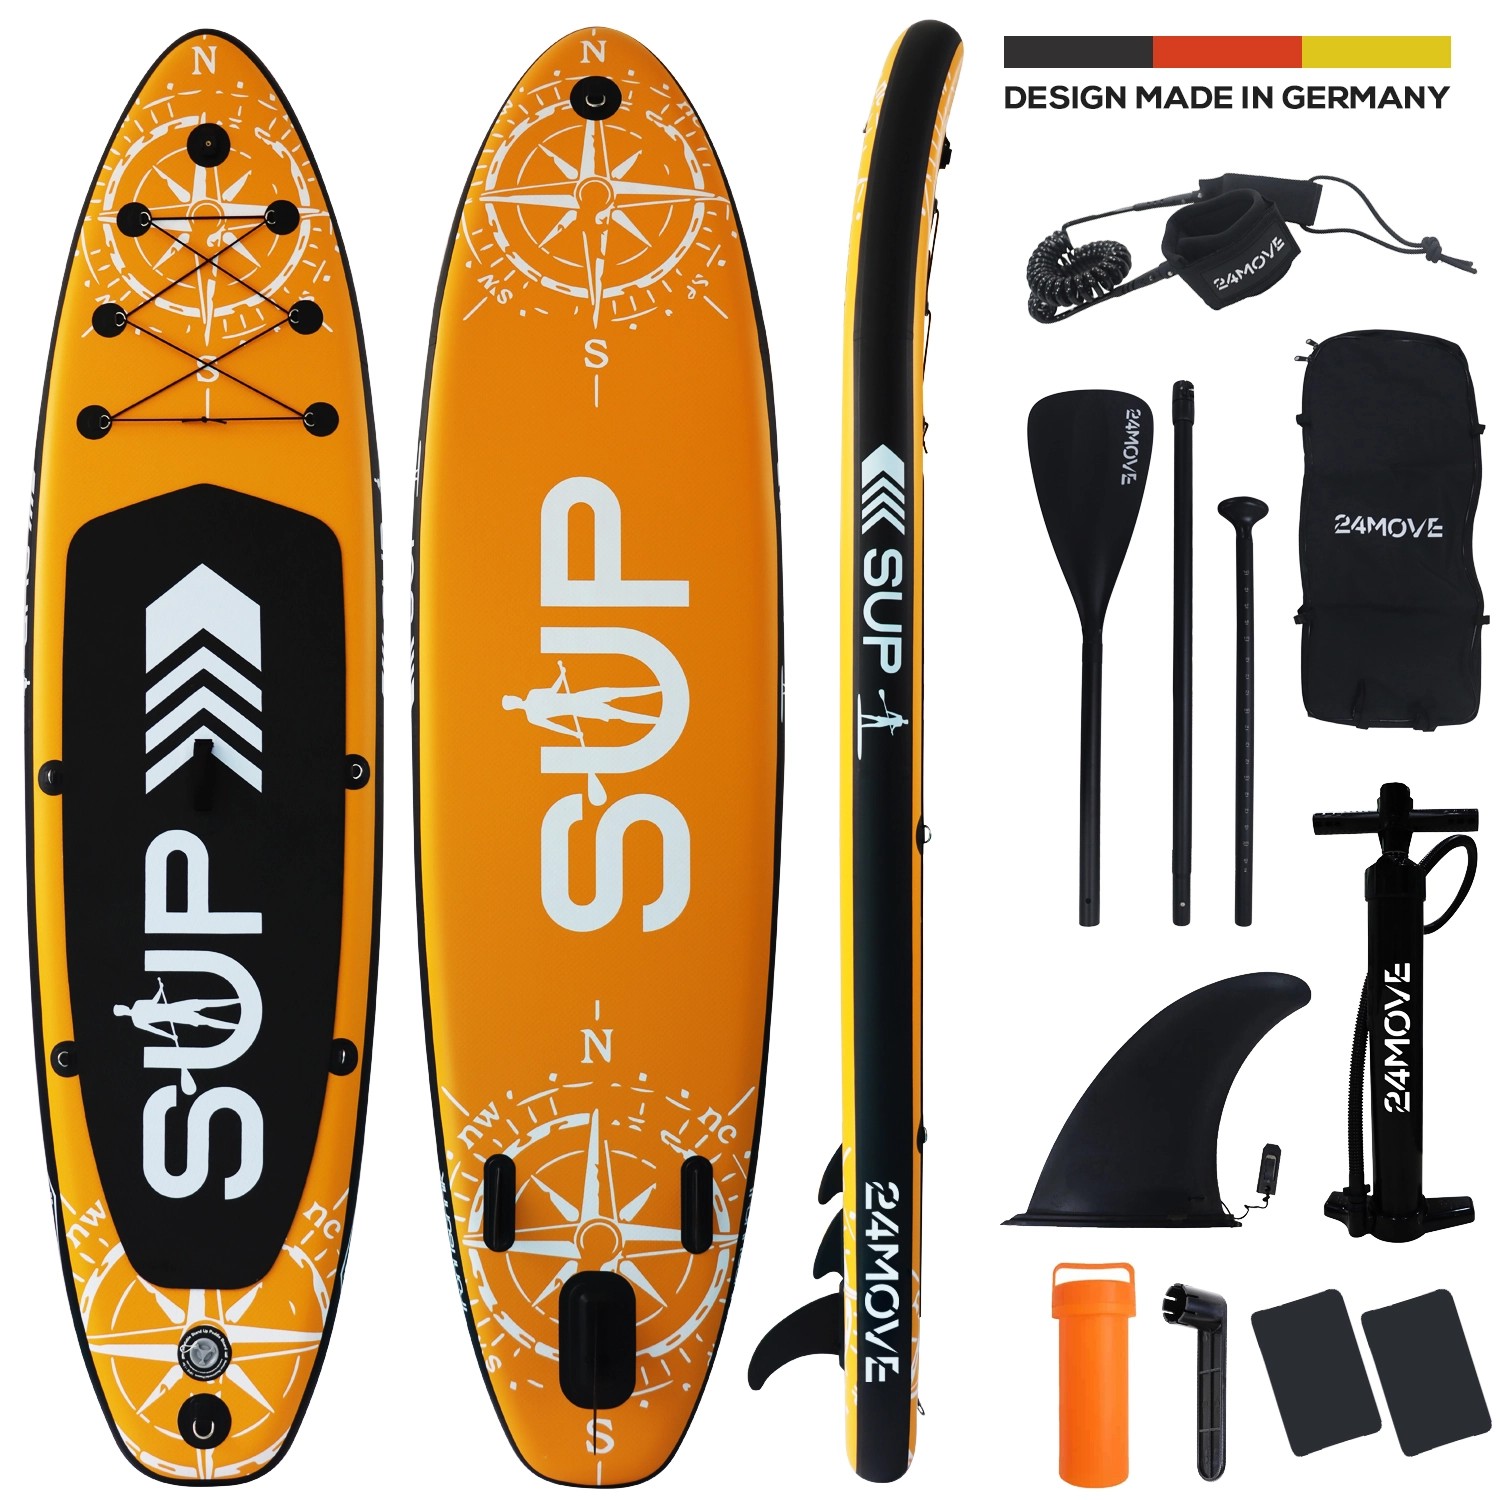 24MOVE Standup Paddle Board SUP- inkl. umfangreichem Zubehör - Orange - 320 x 80 x 15cm